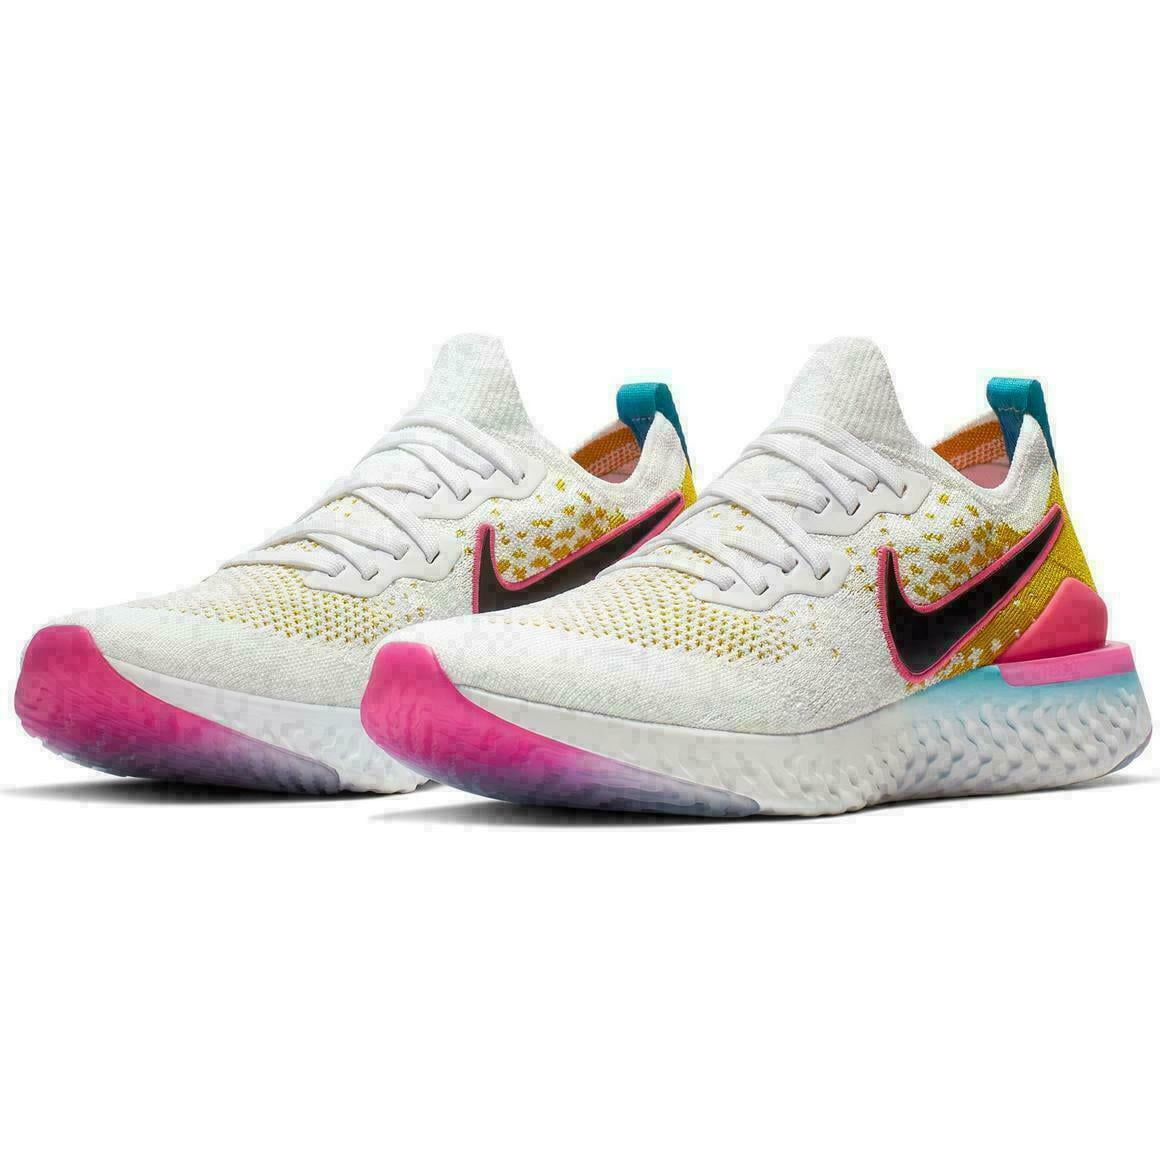 Nike Men's Epic React 2 Running Shoes (White/Black-Pink Blast, 13) - Walmart.com